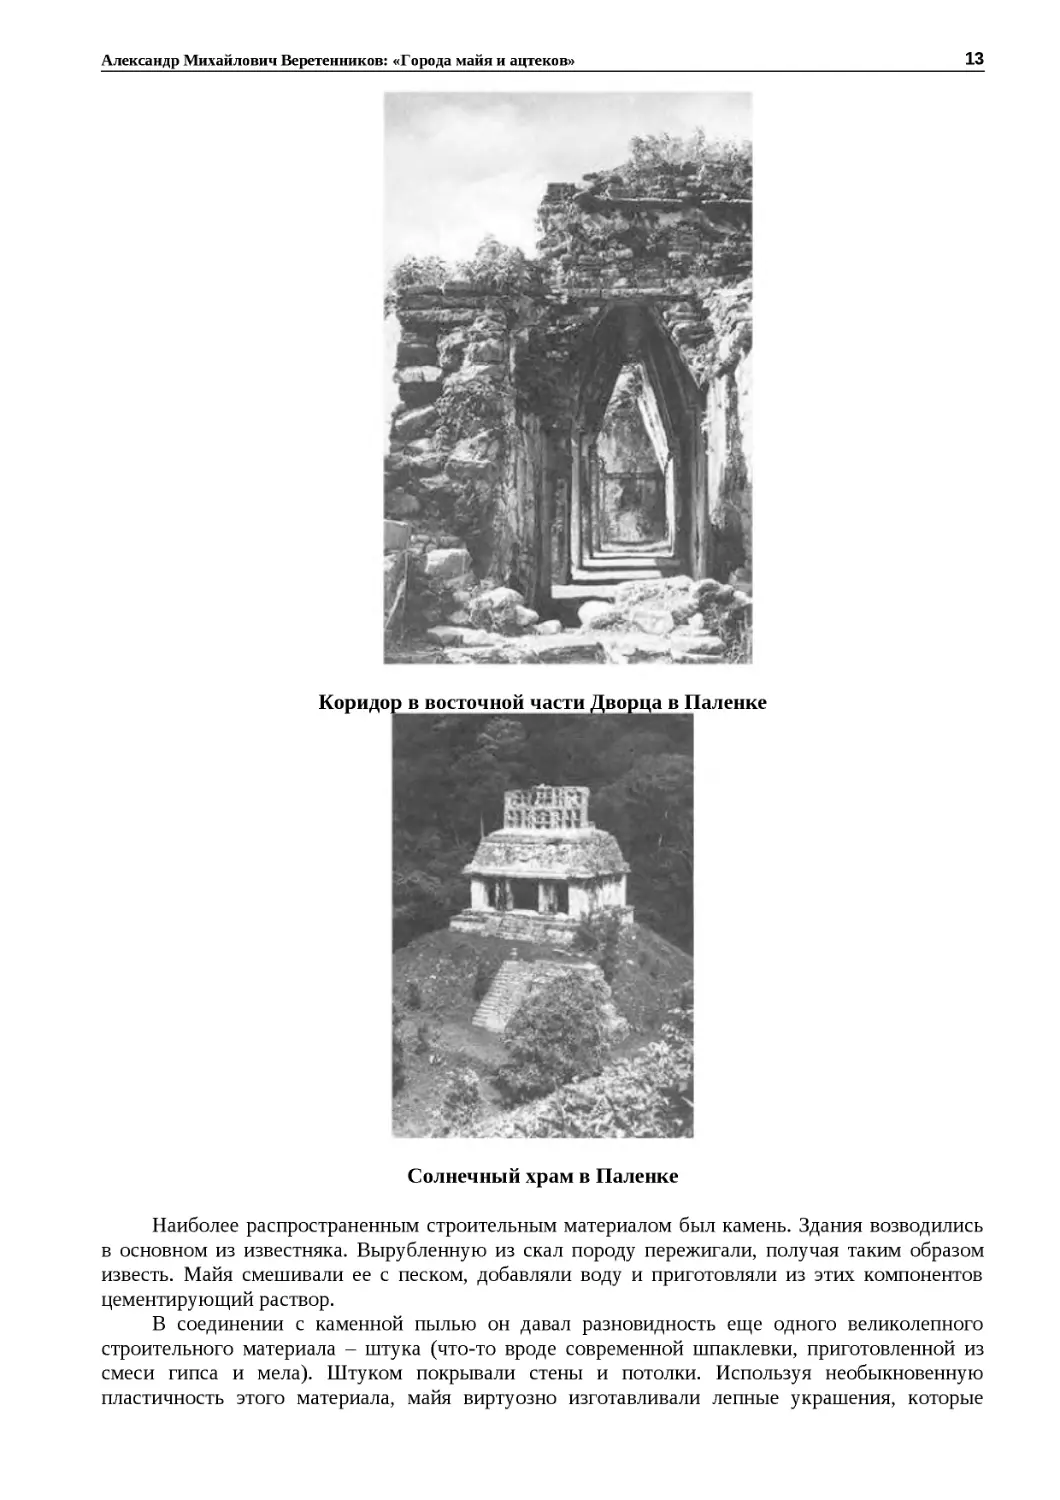 ﻿Коридор в восточной части Дворца в Паленк
"
﻿Солнечный храм в Паленк